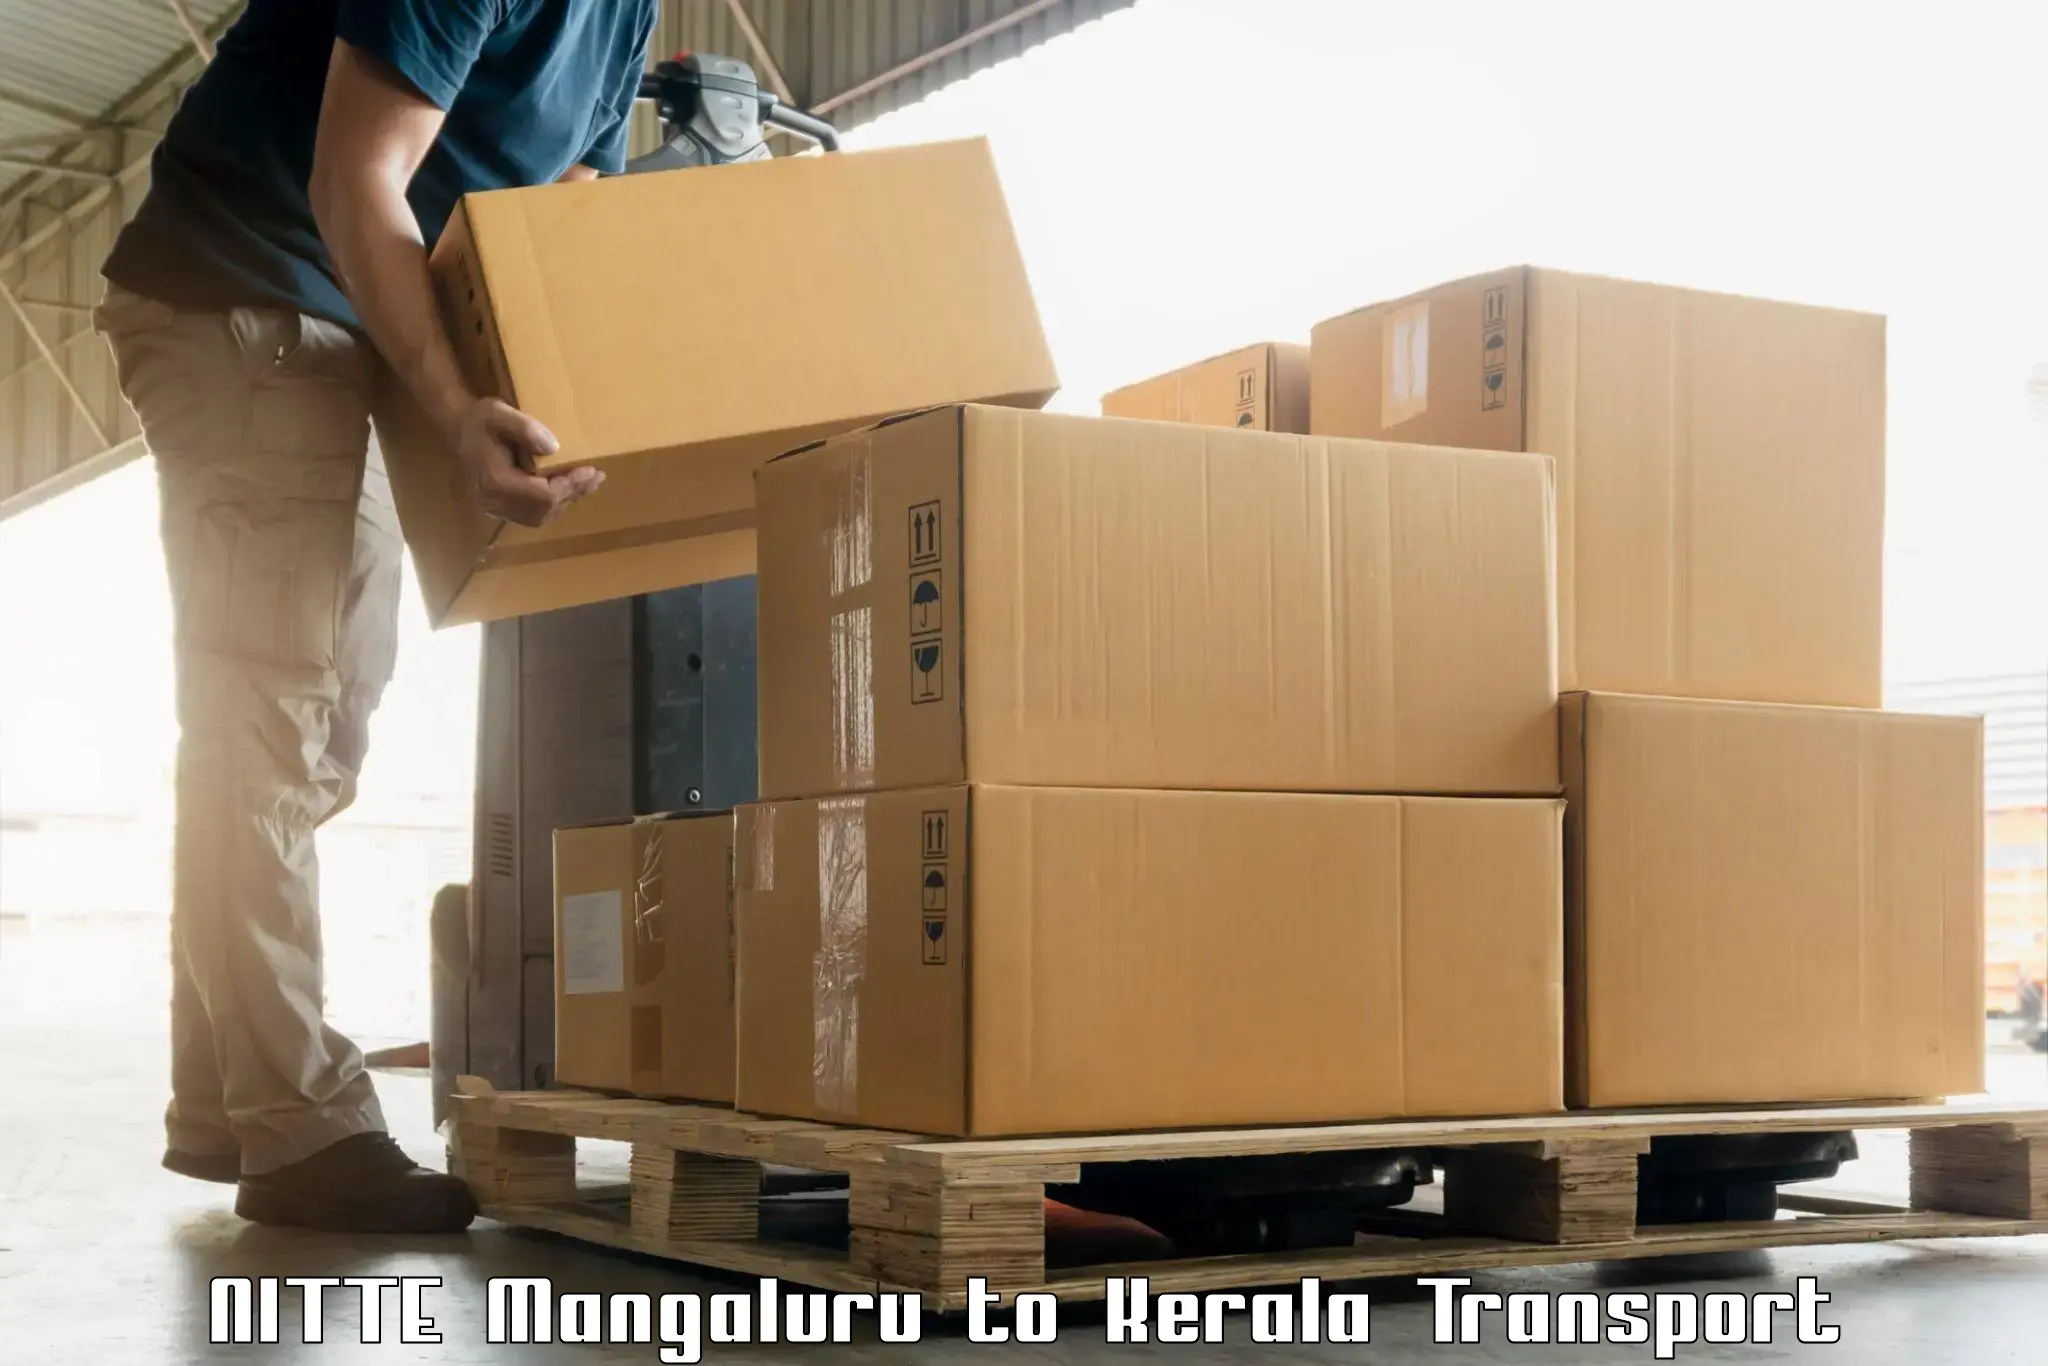 Daily parcel service transport NITTE Mangaluru to Tirurangadi